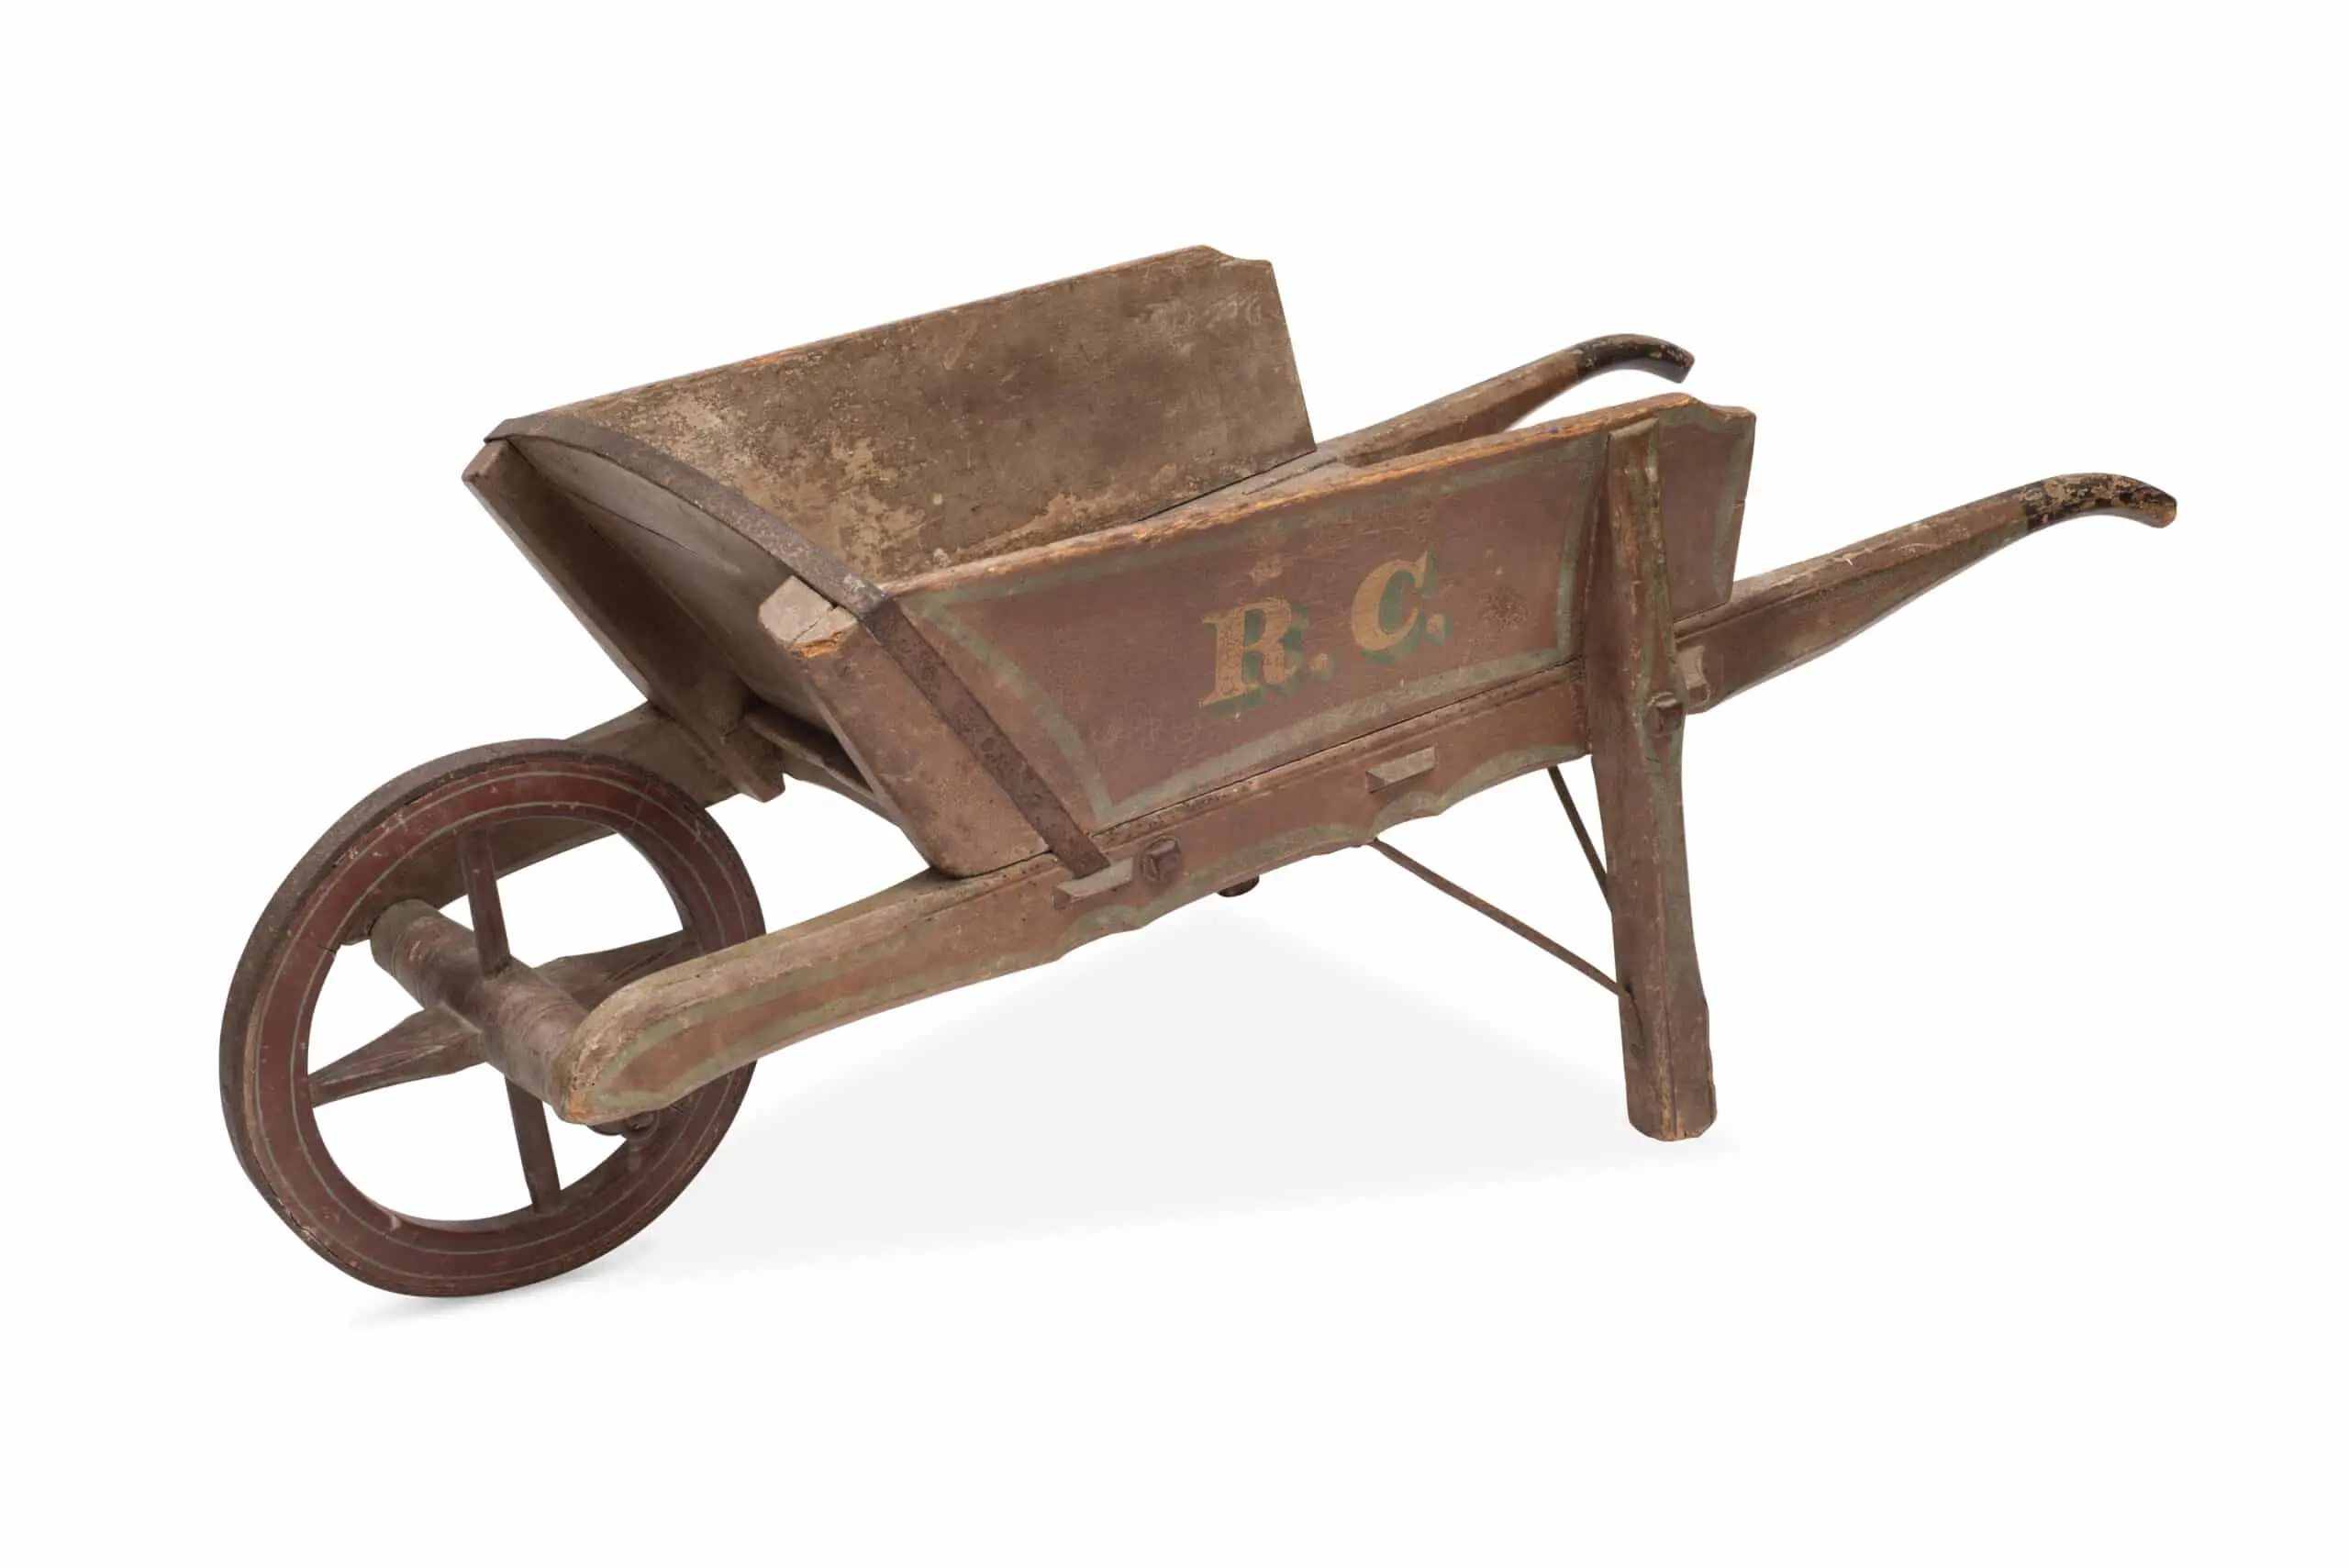 Cut-out of an antique wooden wheelbarrow.